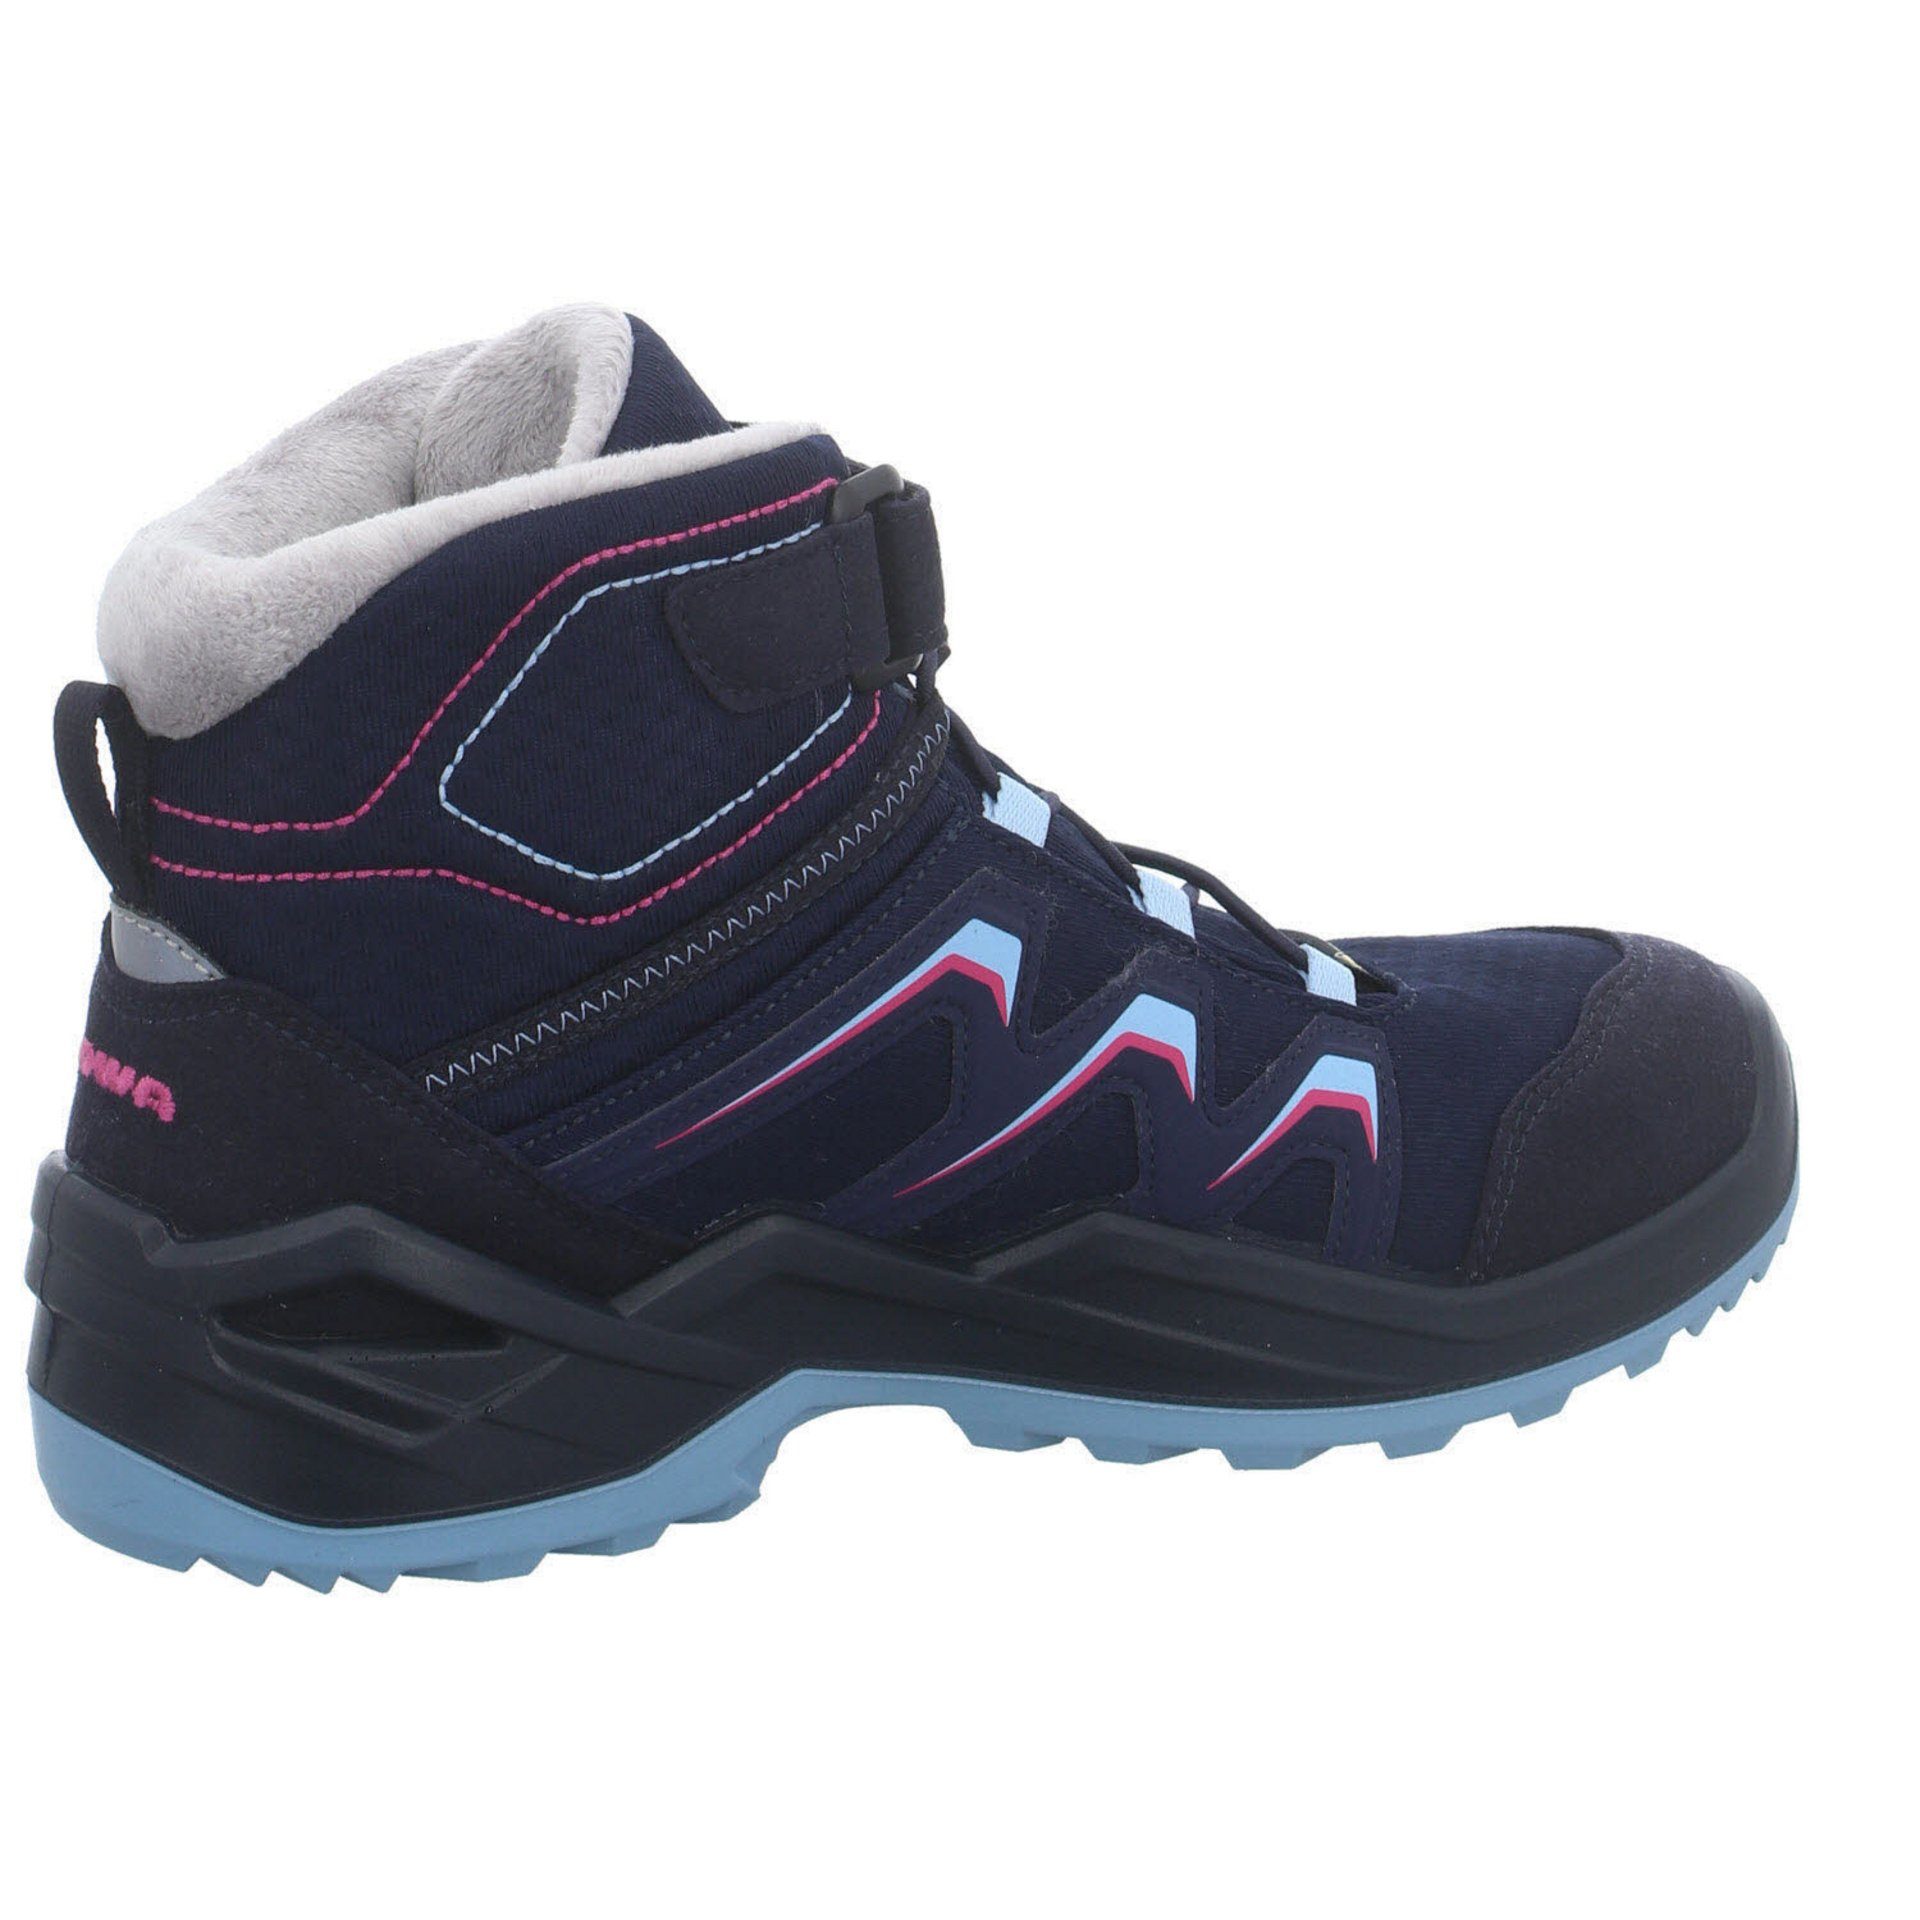 Lowa Jungen Stiefel Textil Schuhe Warm Stiefel Boots GTX Maddox NAVY/BEERE